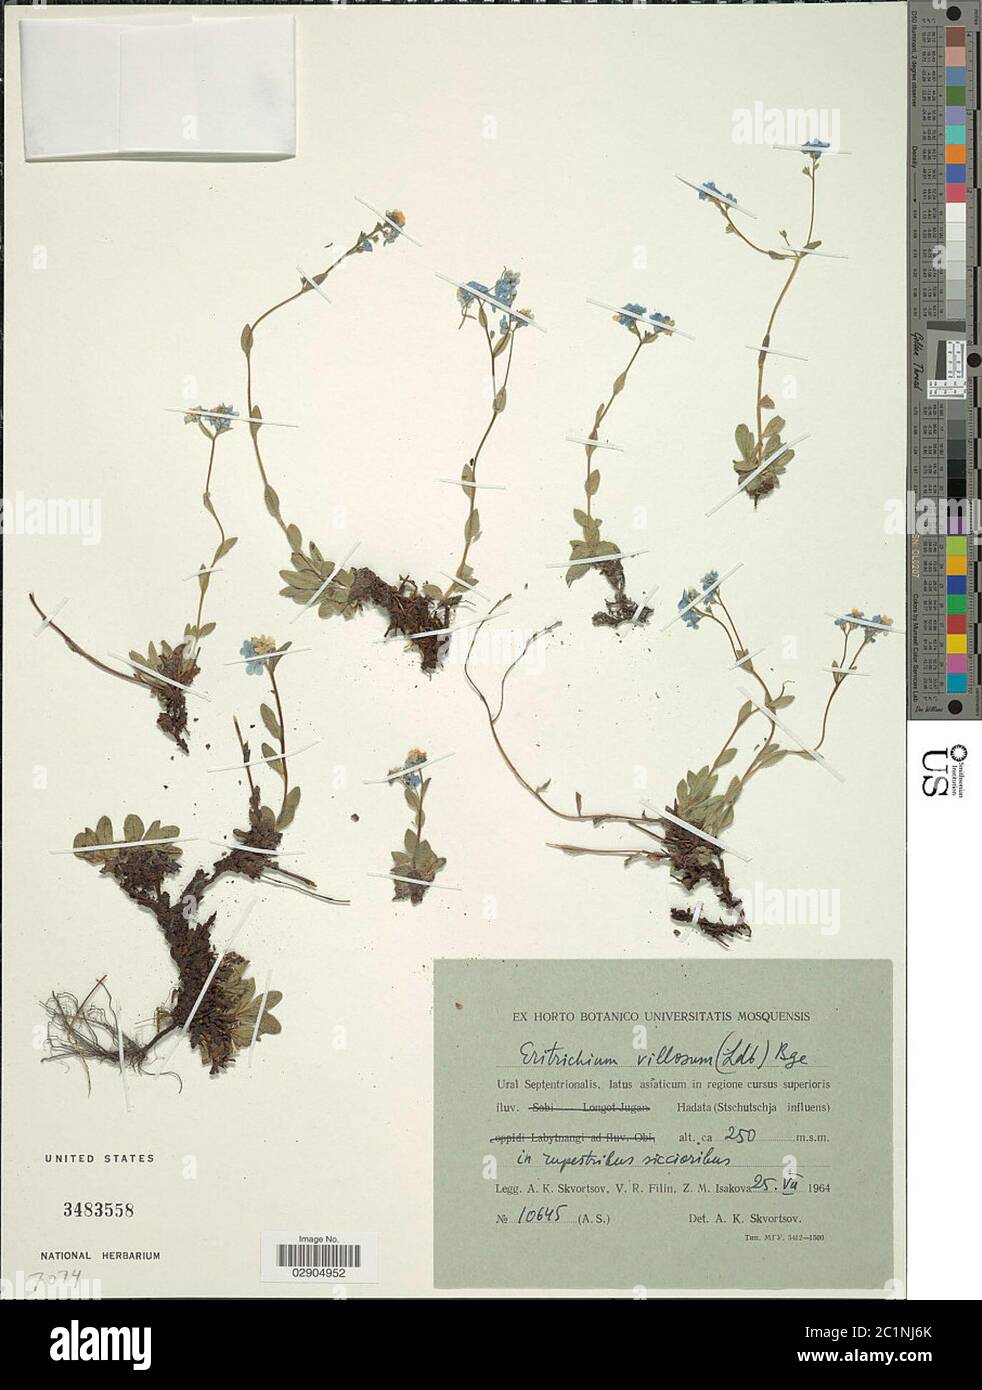 Eritrichium villosum Ledeb Bunge Eritrichium villosum Ledeb Bunge. Stock Photo